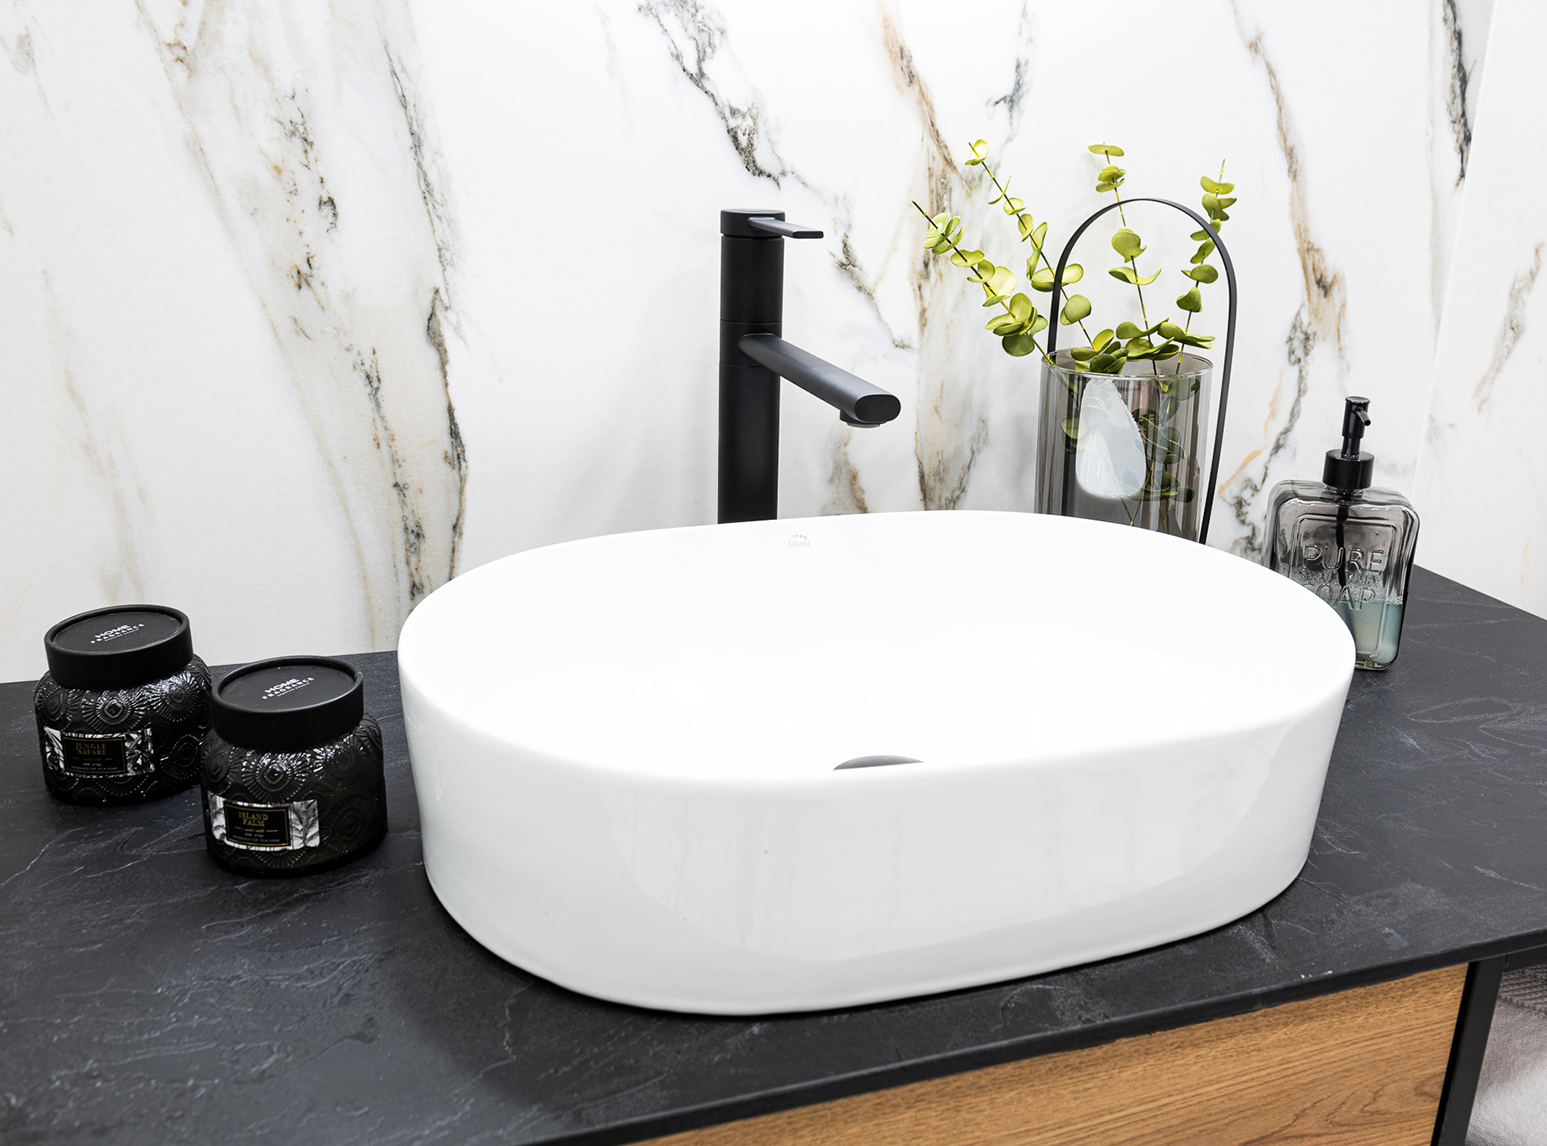 Desna - ceramic countertop washbasin - Laveo